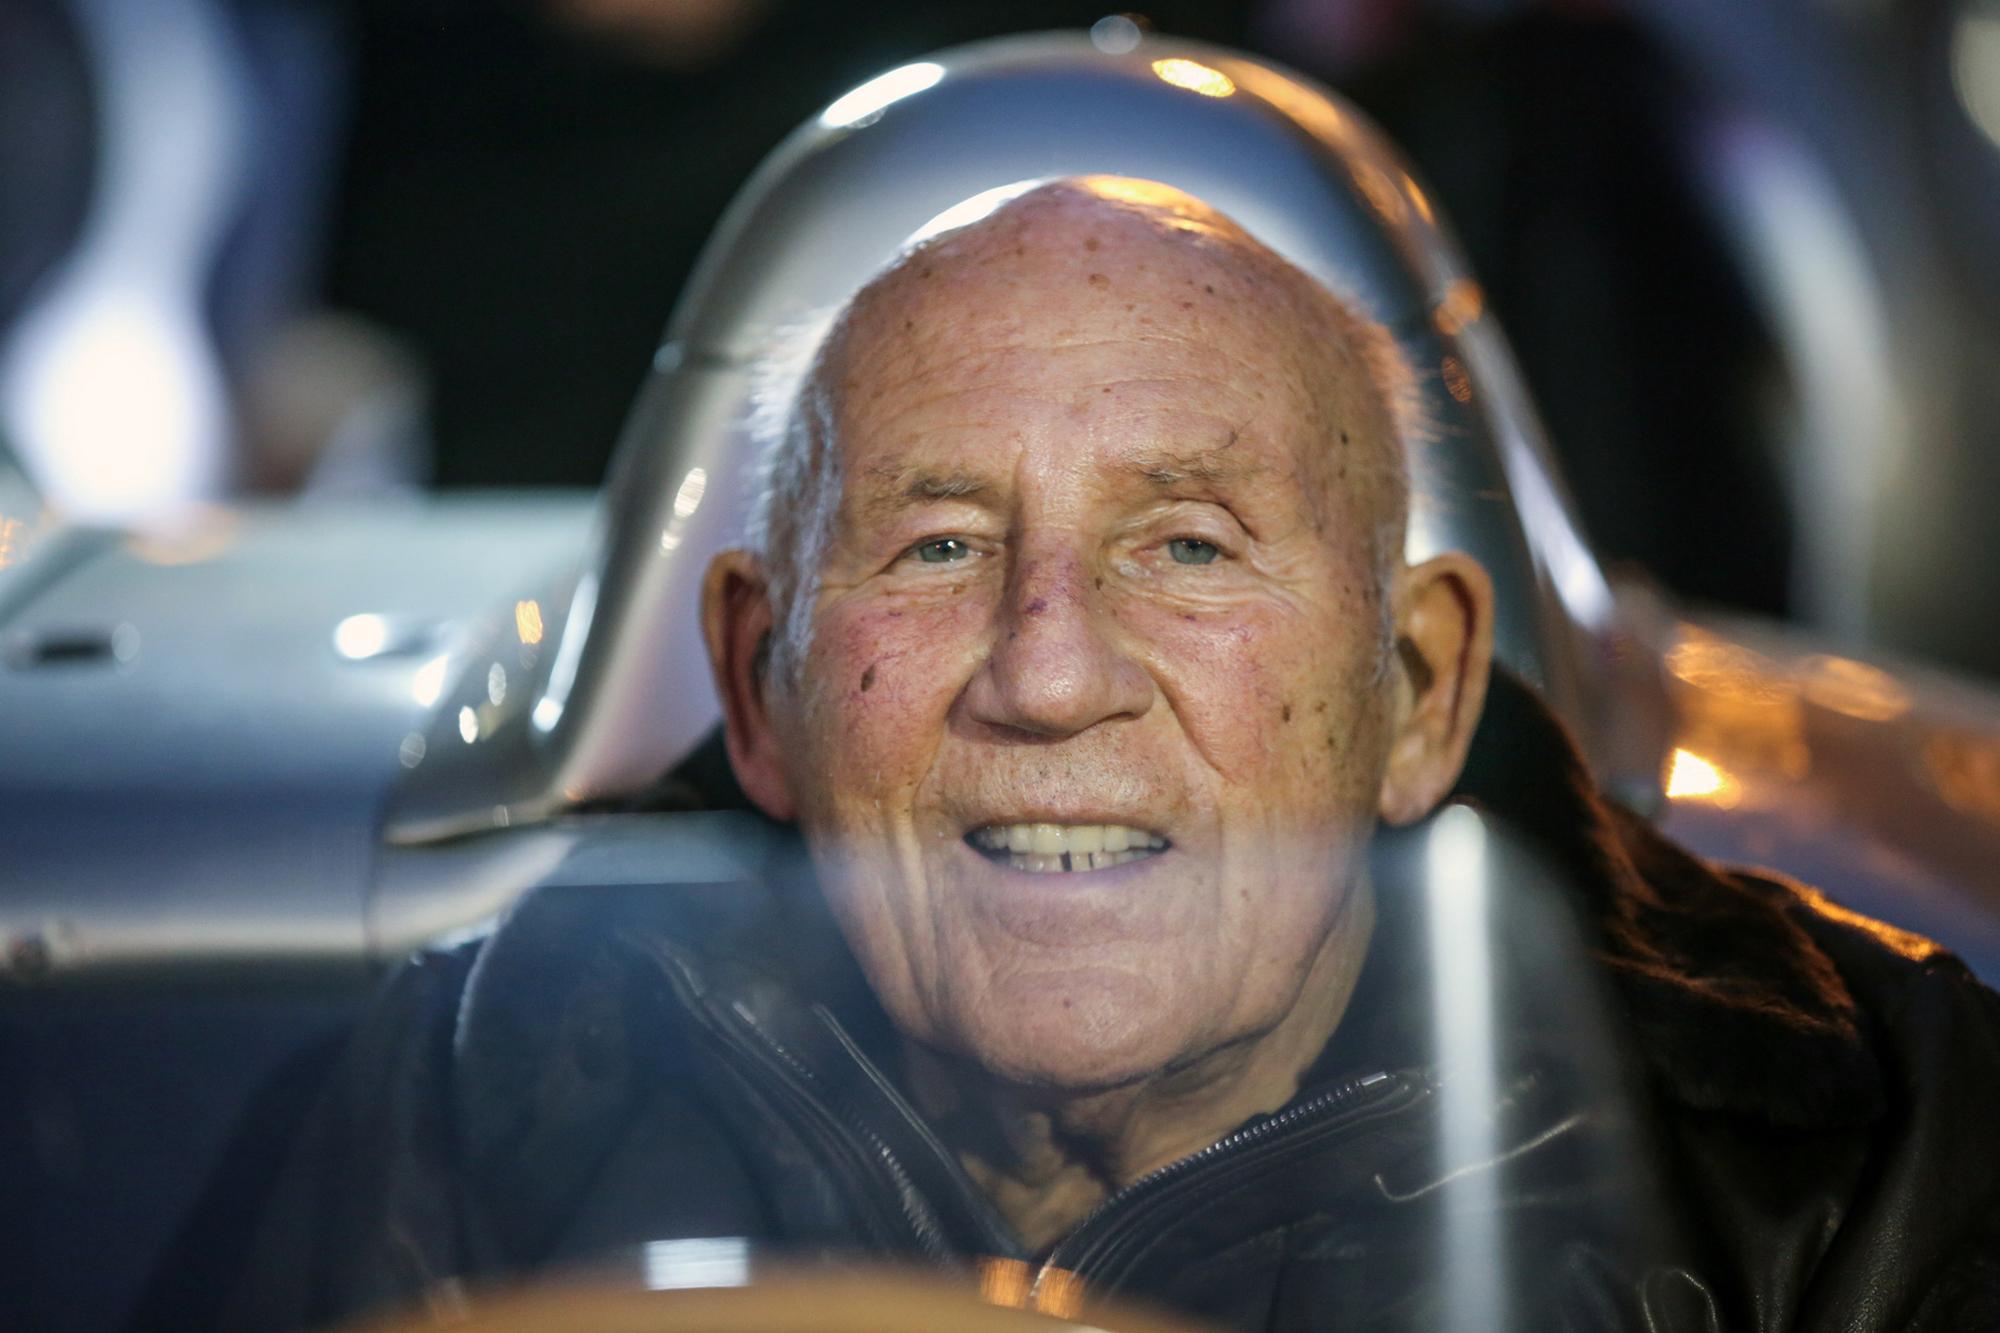 Η Mercedes-Benz τιμά τον Sir Stirling Moss